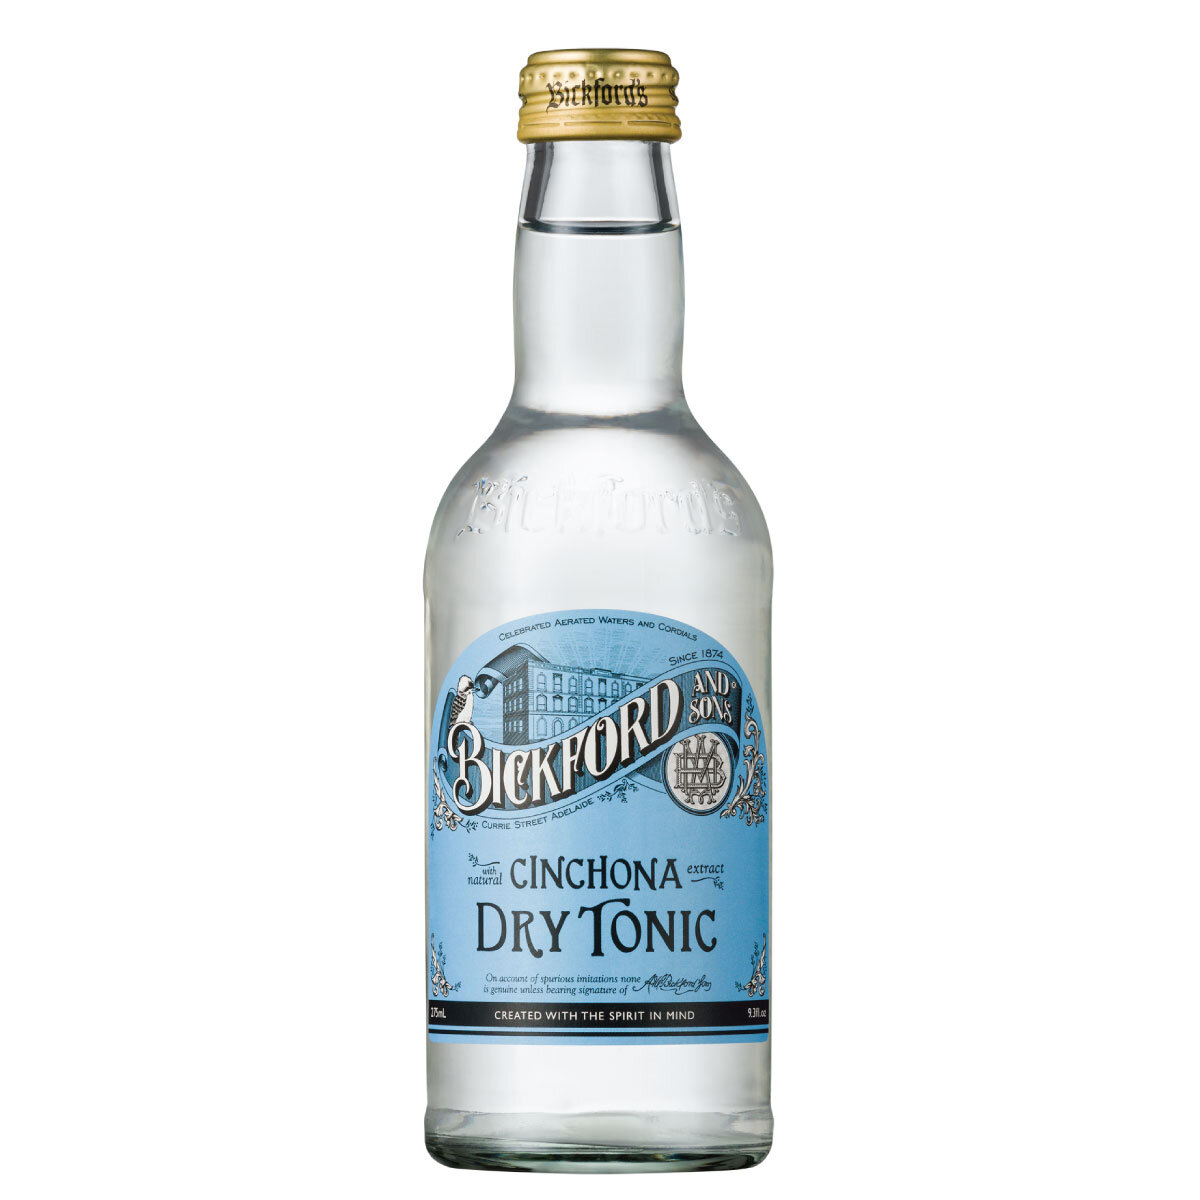 Тоник «Bickford and Sons» Dry Tonic | Драй тоник